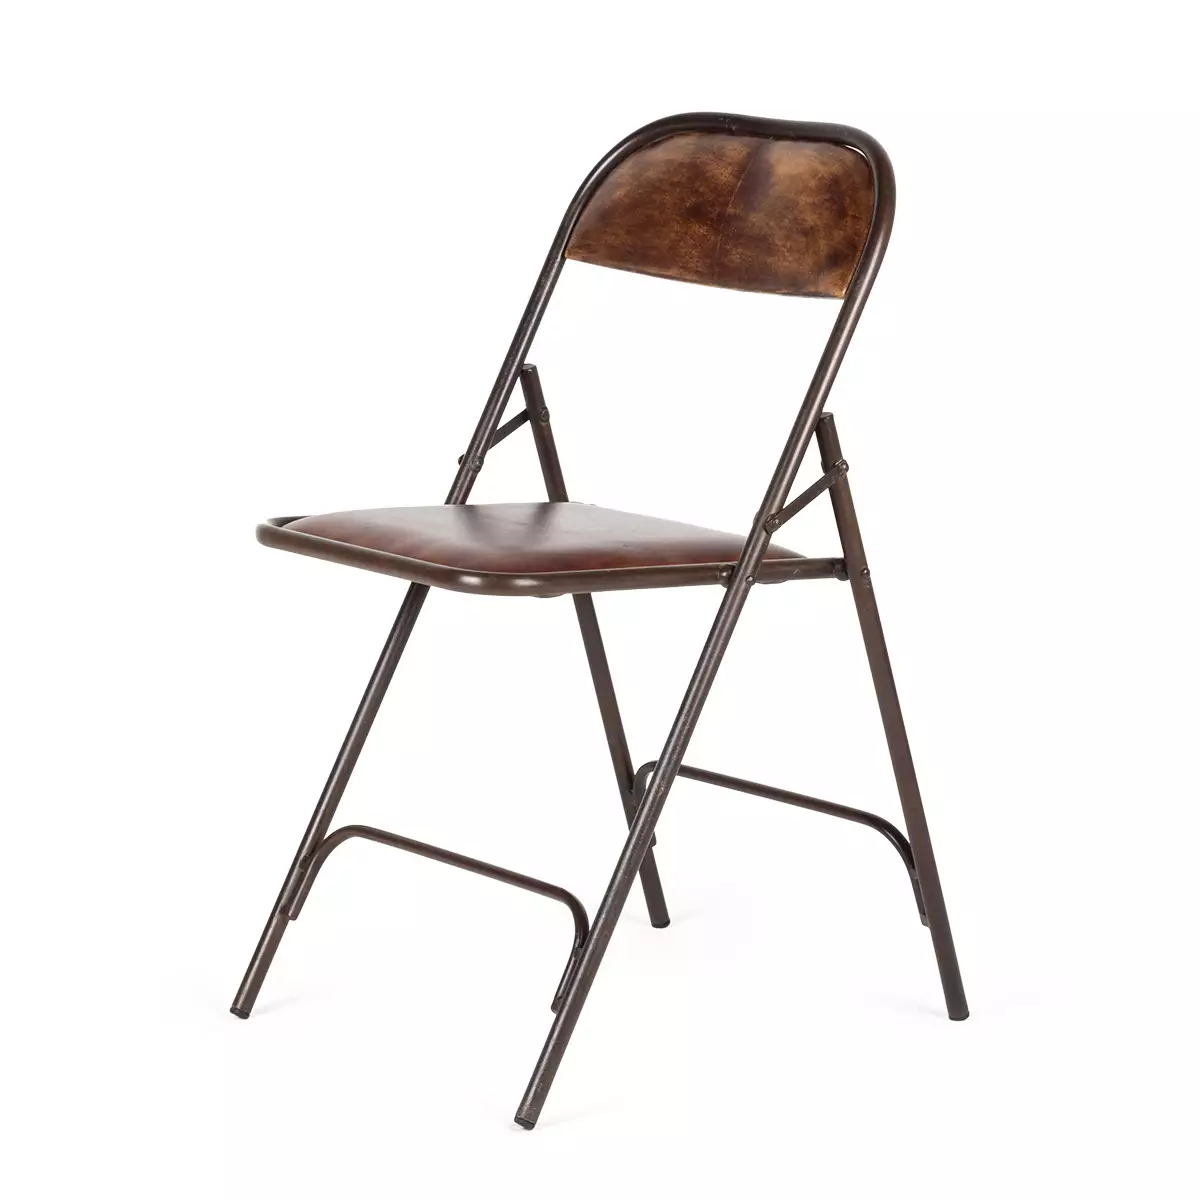 Складной стул Augusta с кожаным сиденьем